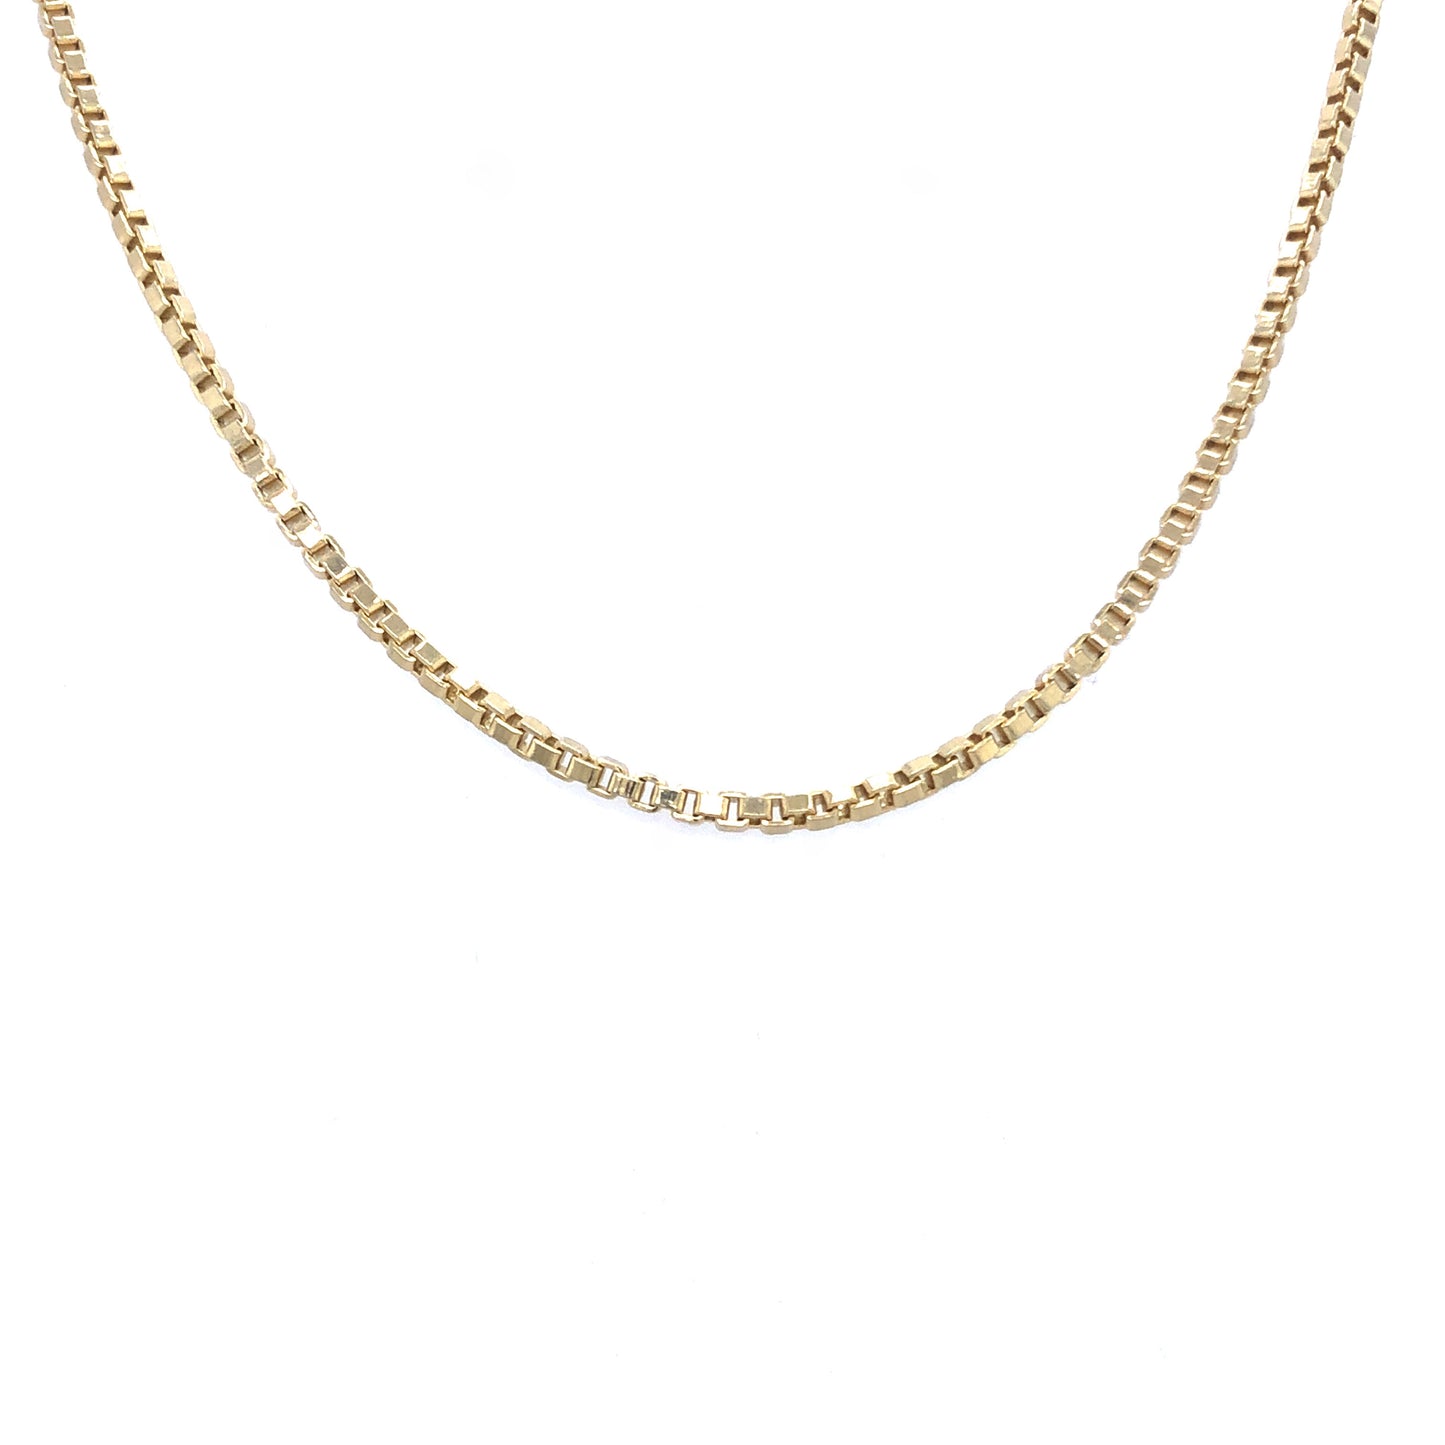 Halskette Gold 750 / 18k , Venezianerkette extra lang 90cm